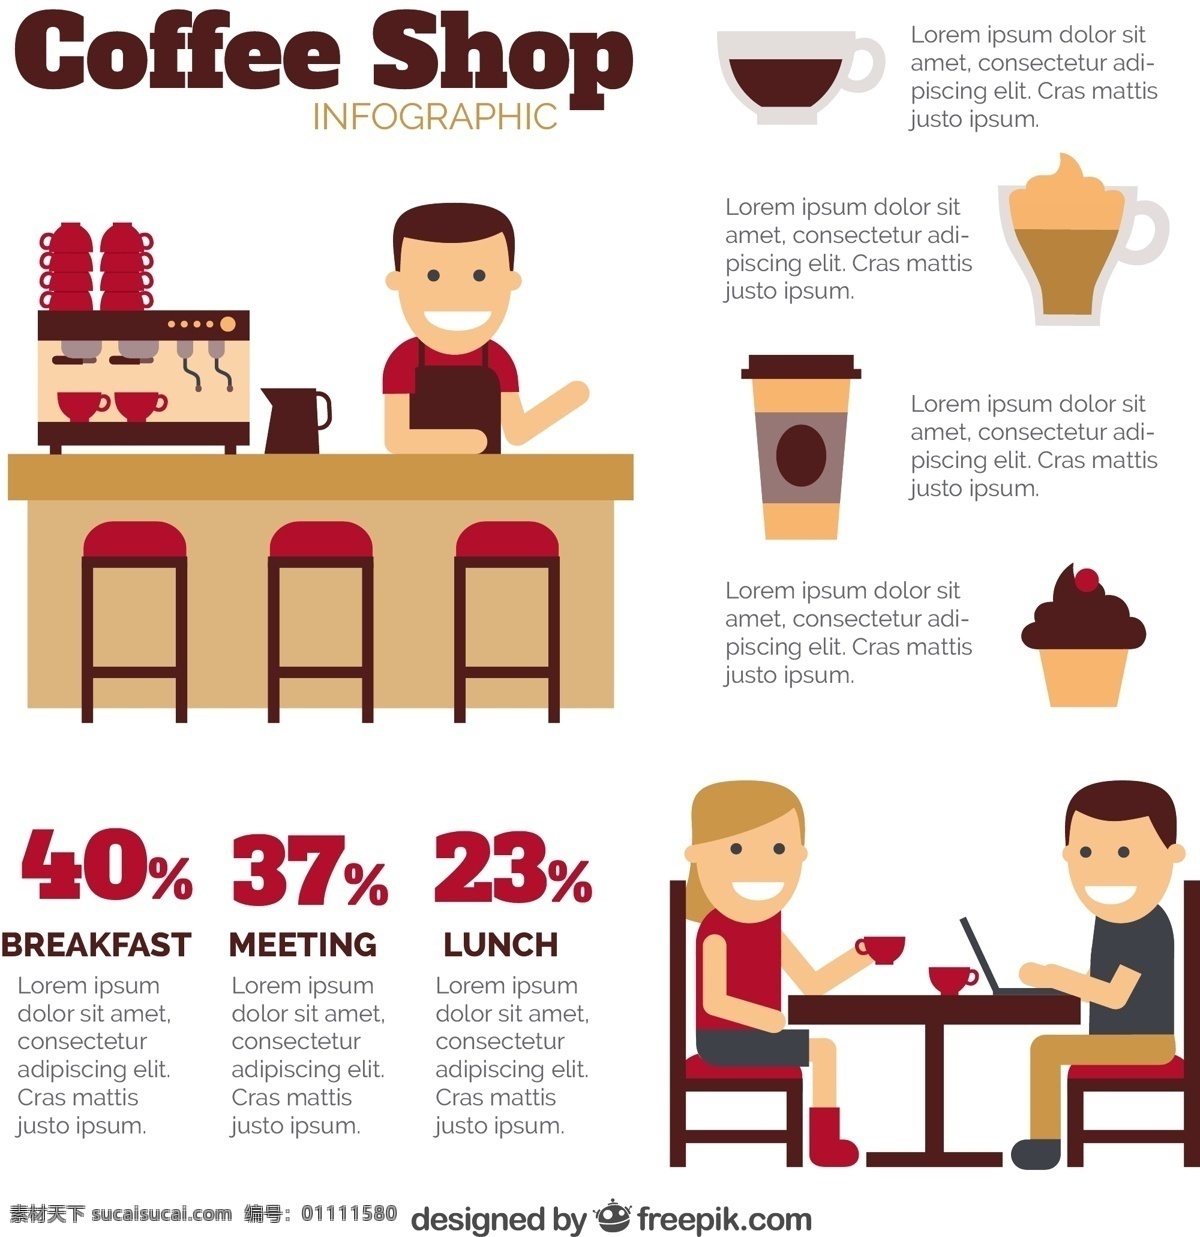 很 不错 咖啡店 infography 模板 图表 人 咖啡 蛋糕 桌子 平 商店 图形 饮料 咖啡杯 杯 早餐 图 平面设计 信息 过程 白色